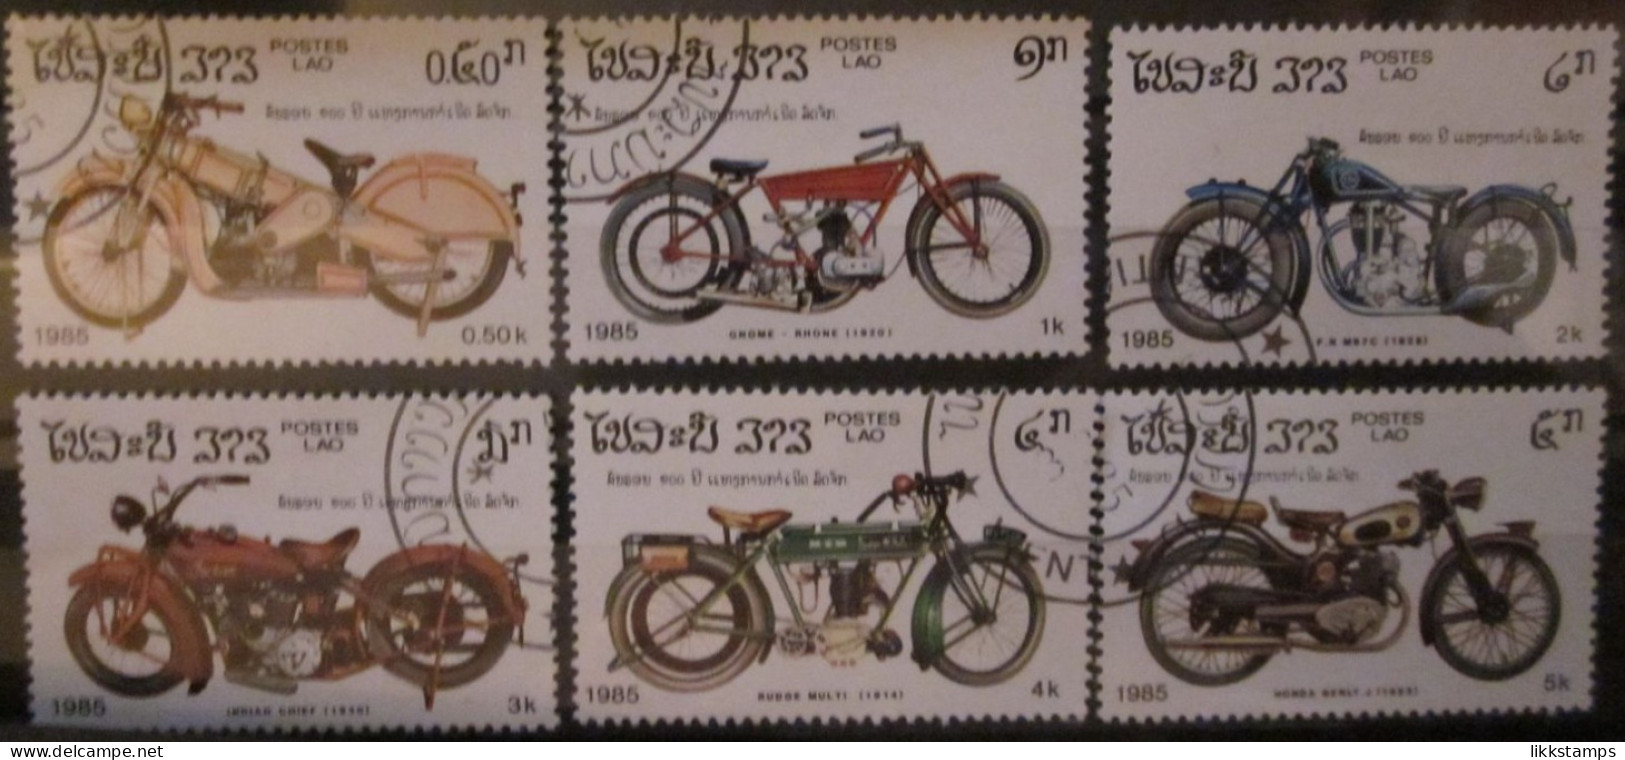 LAOS ~ 1985 ~ S.G. 807 - 812, ~ CENTENARY OF THE MOTORCYCLE. ~ VFU #03429 - Laos